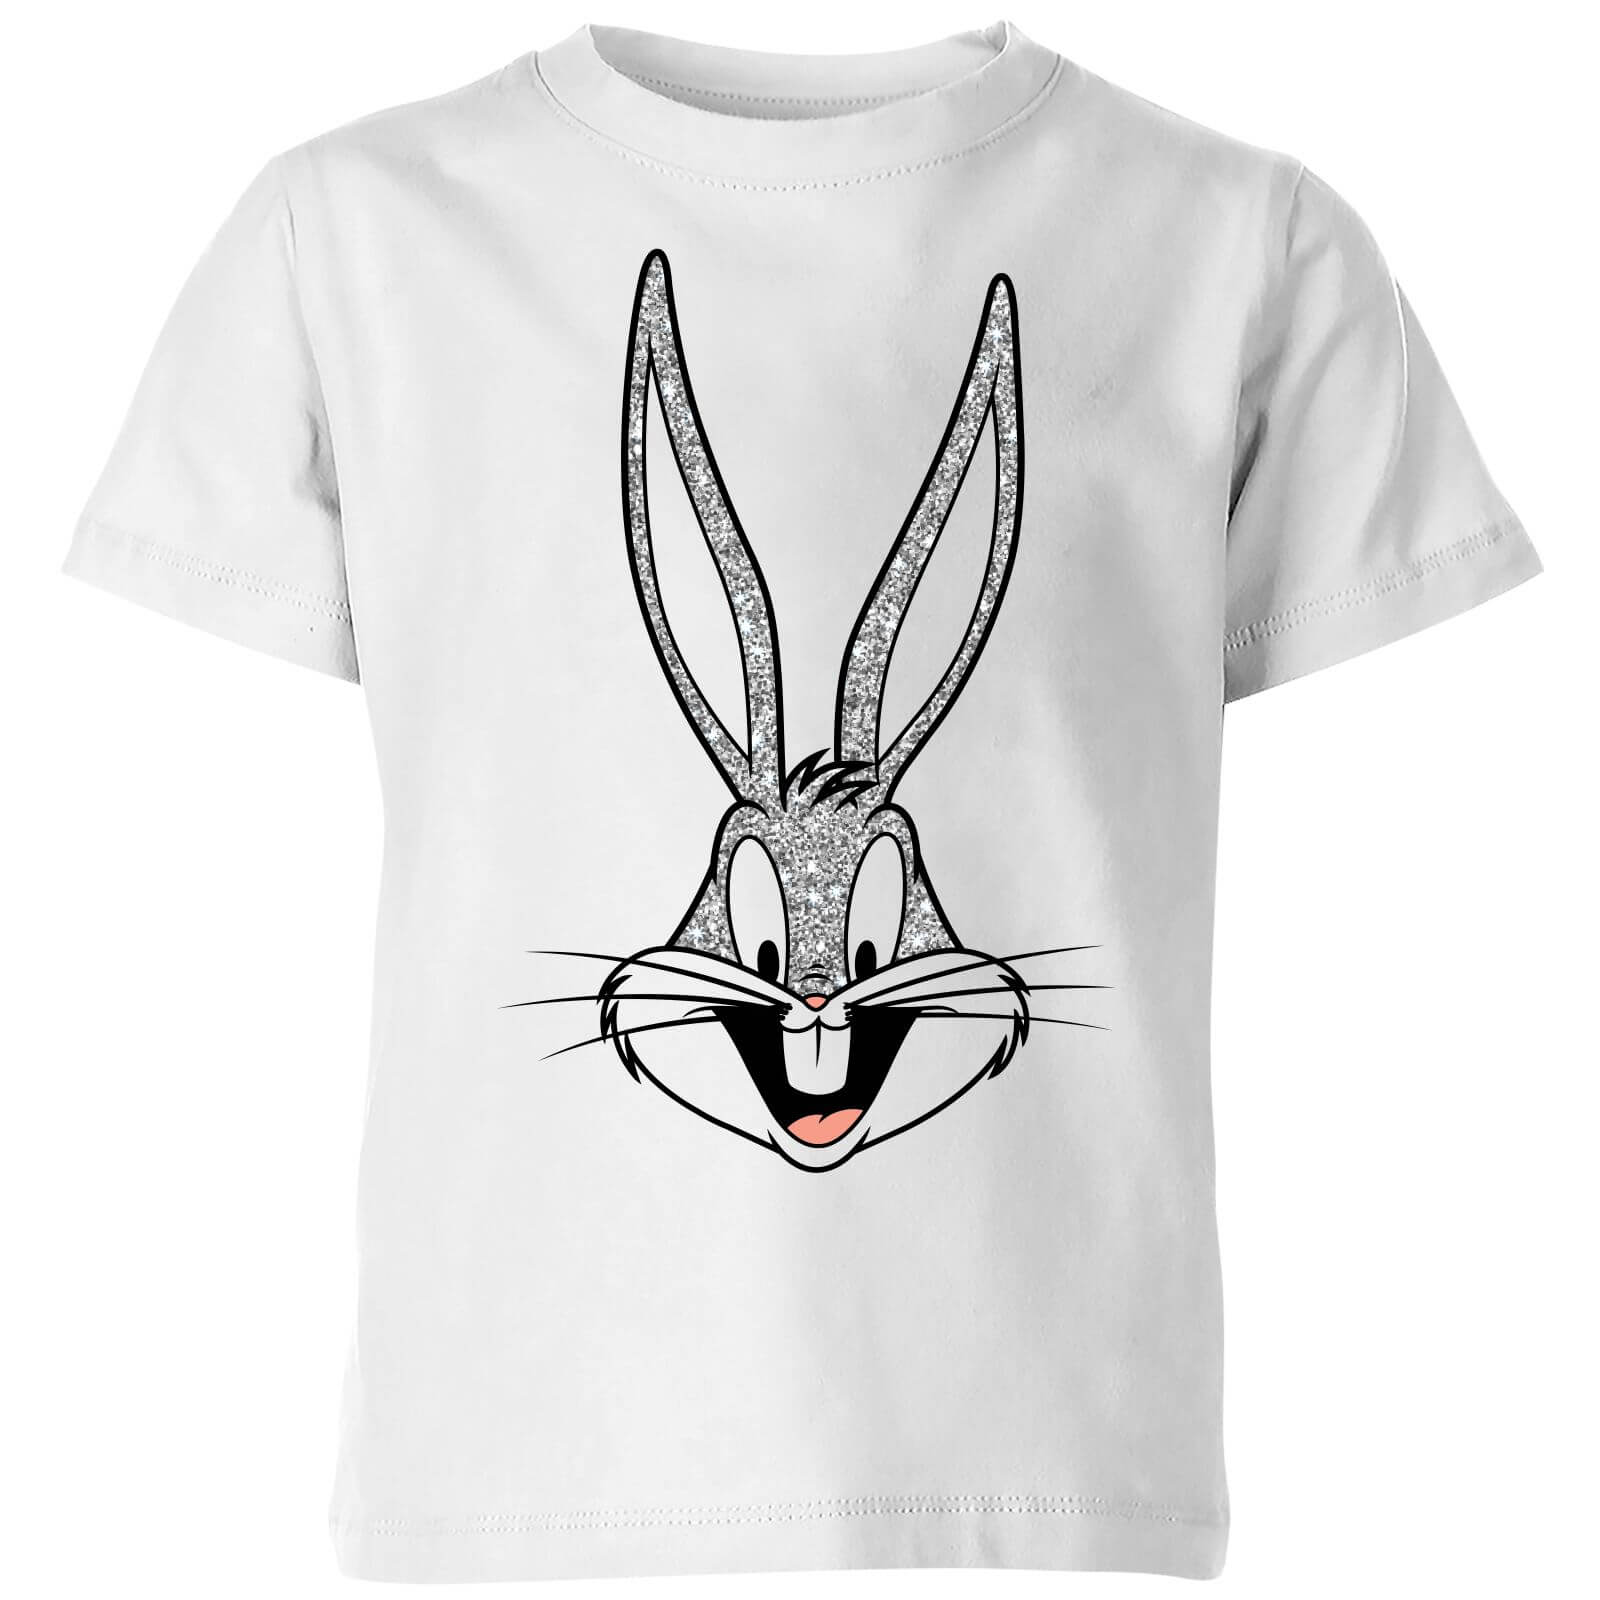 Looney Tunes Bugs Bunny Kids' T-Shirt - White - 5-6 Years - White